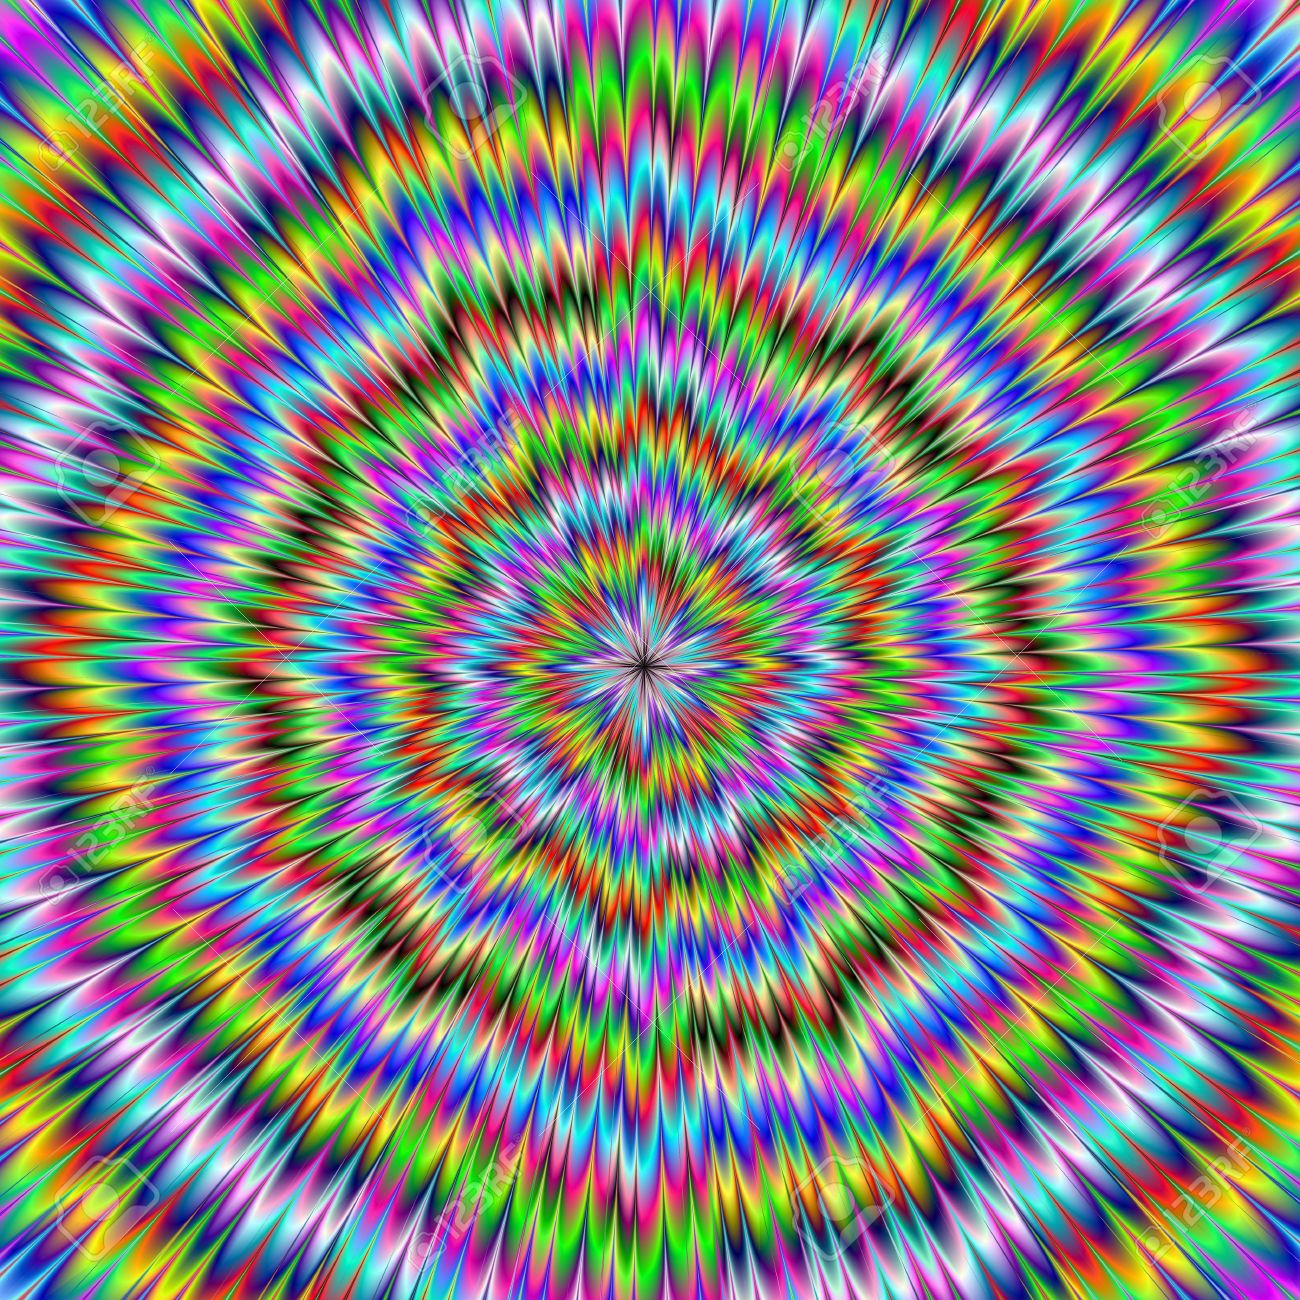 14473934-La-imagen-digital-abstracto-con-una-explosi-n-de-azul-rojo-amarillo-verde-y-morado-producir-una-ilus-Foto-de-archivo.jpg